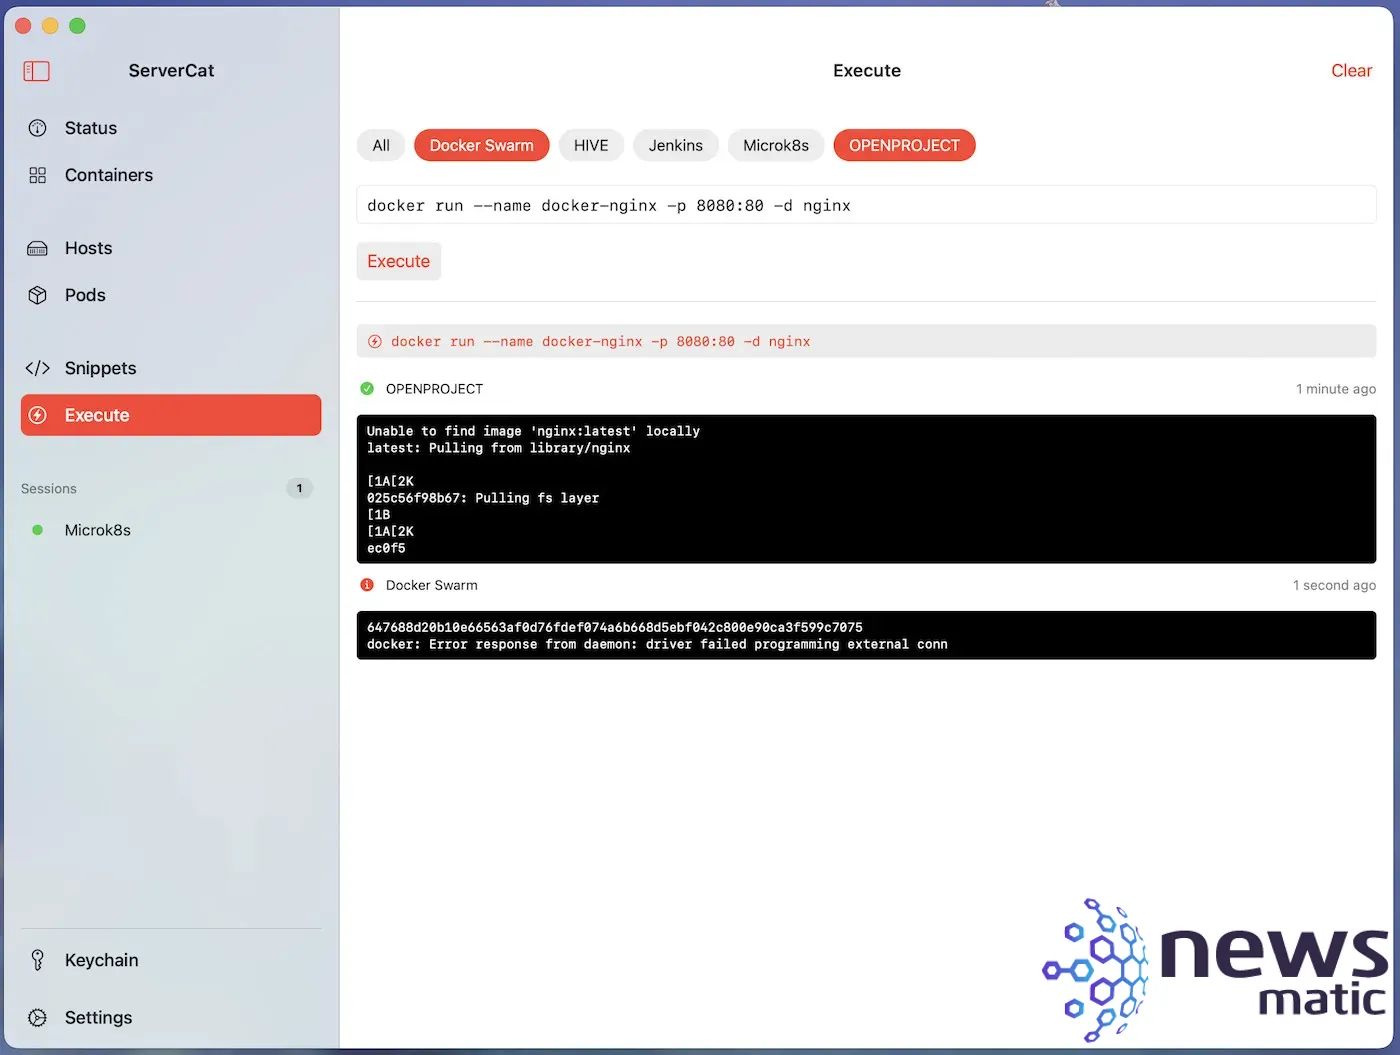 Cómo realizar despliegues de contenedores Docker en múltiples servidores con ServerCat - Nube | Imagen 5 Newsmatic